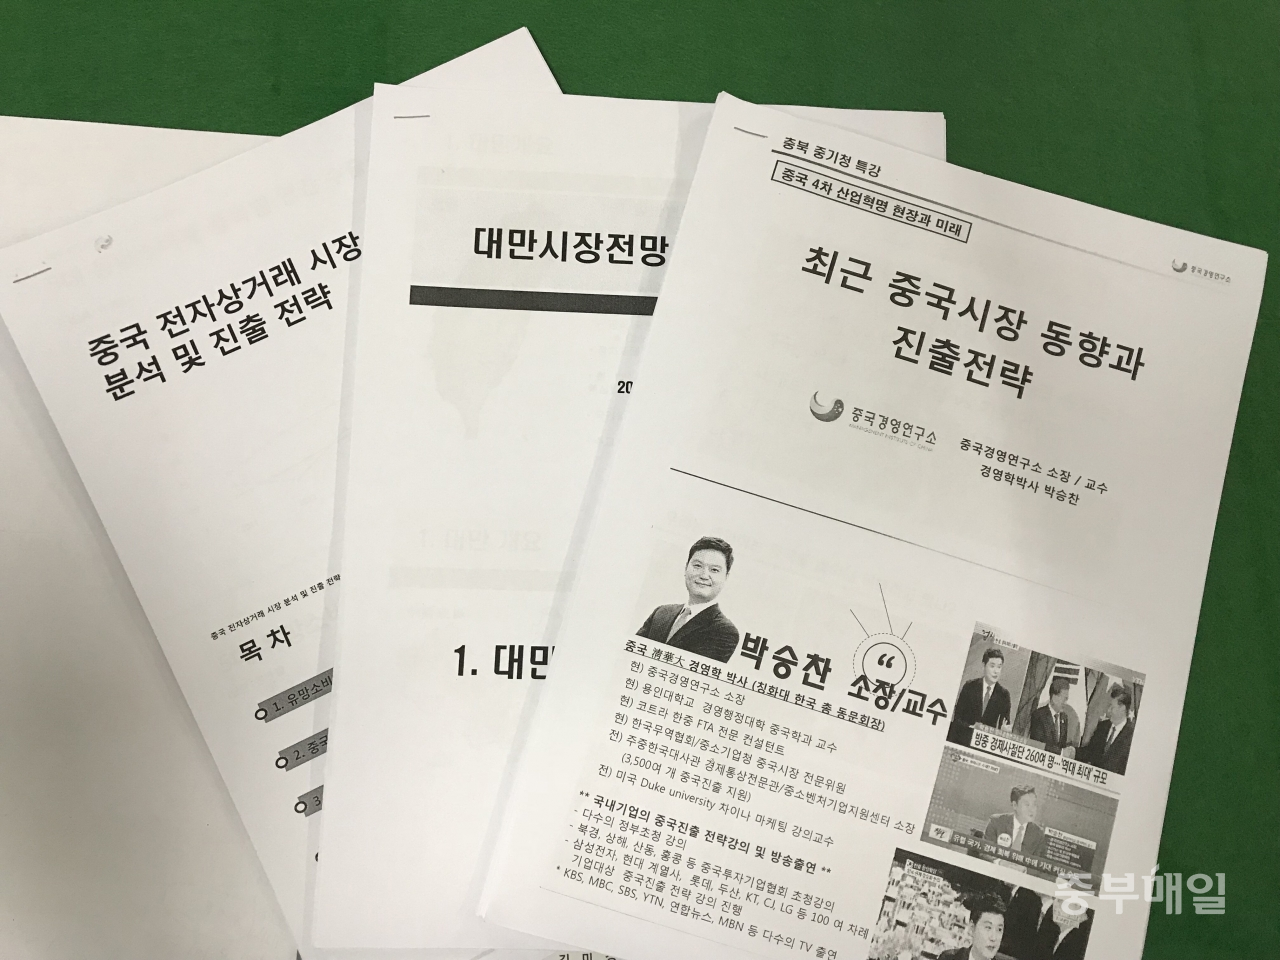 27일 '2018년도 중화권 시장 진출 성공전략 설명회' 자료집. / 김미정